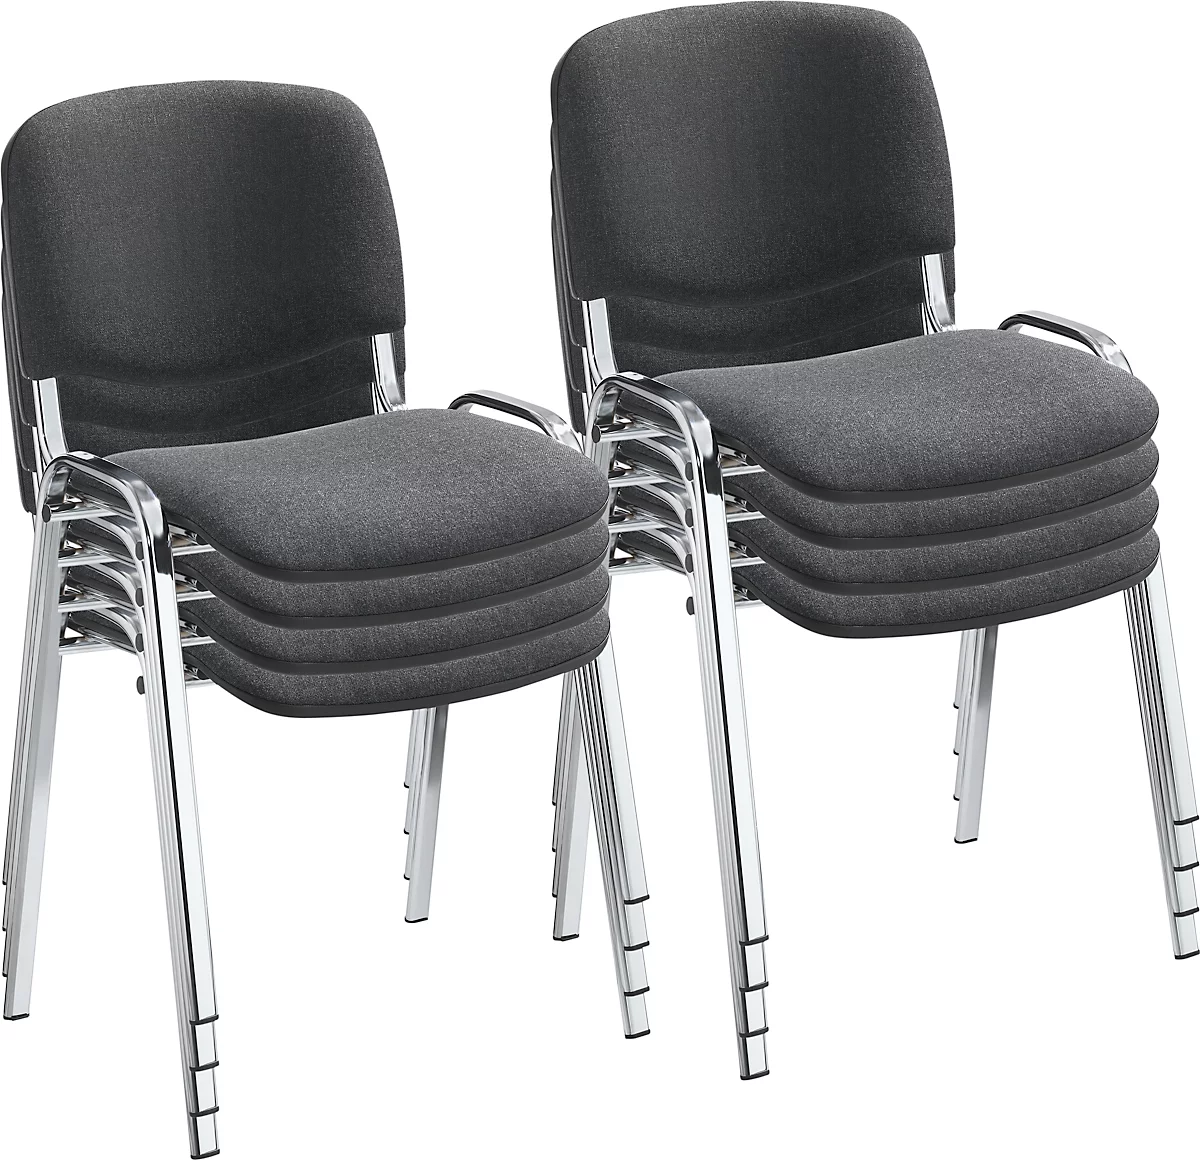 NowyStyl Set de chaises empilables ISO BASIC, sans accoudoirs, empilable jusqu'à 12 pièces, housse anthracite, piétement argent chromé, 8 pièces